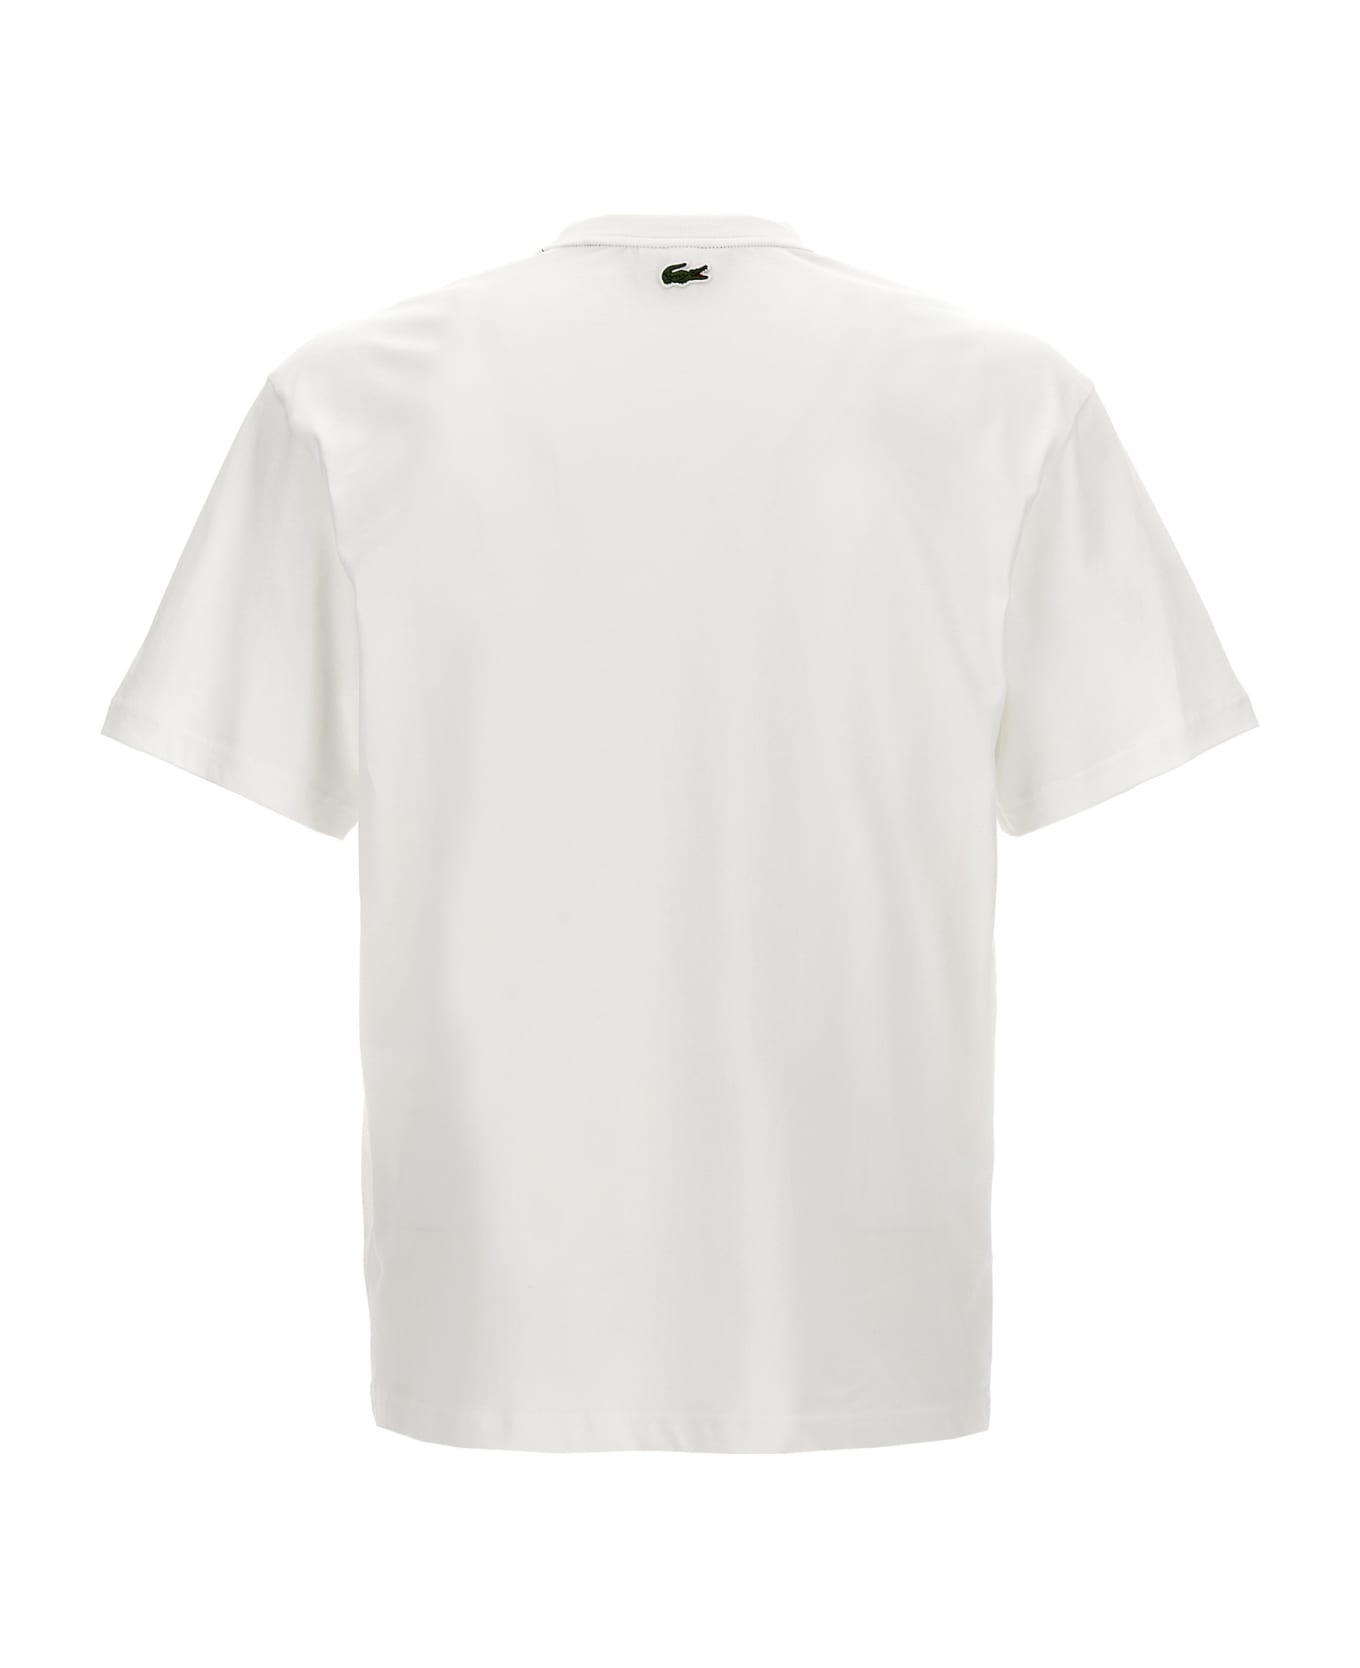 Lacoste Logo Print T-shirt - White シャツ